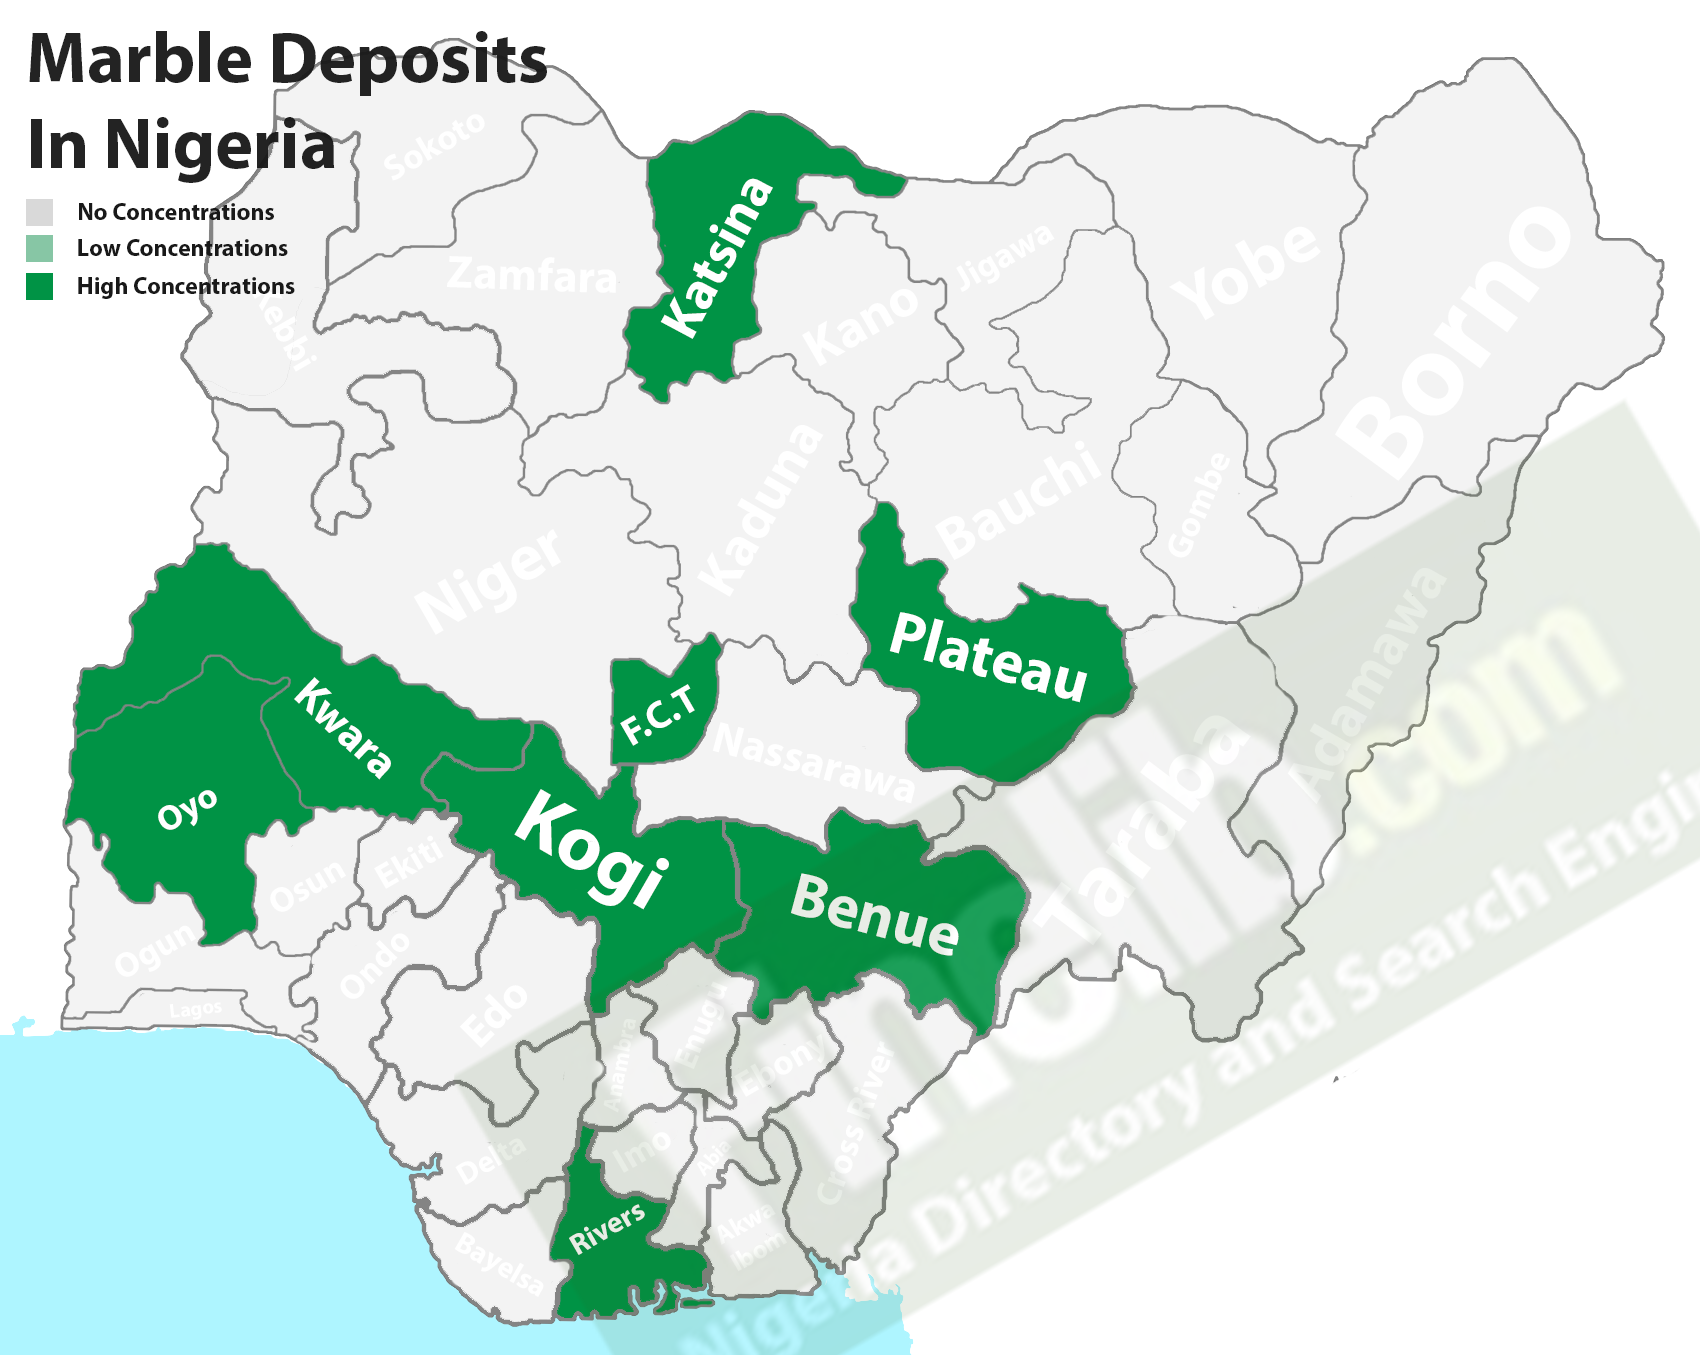 Marble deposits in Nigeria